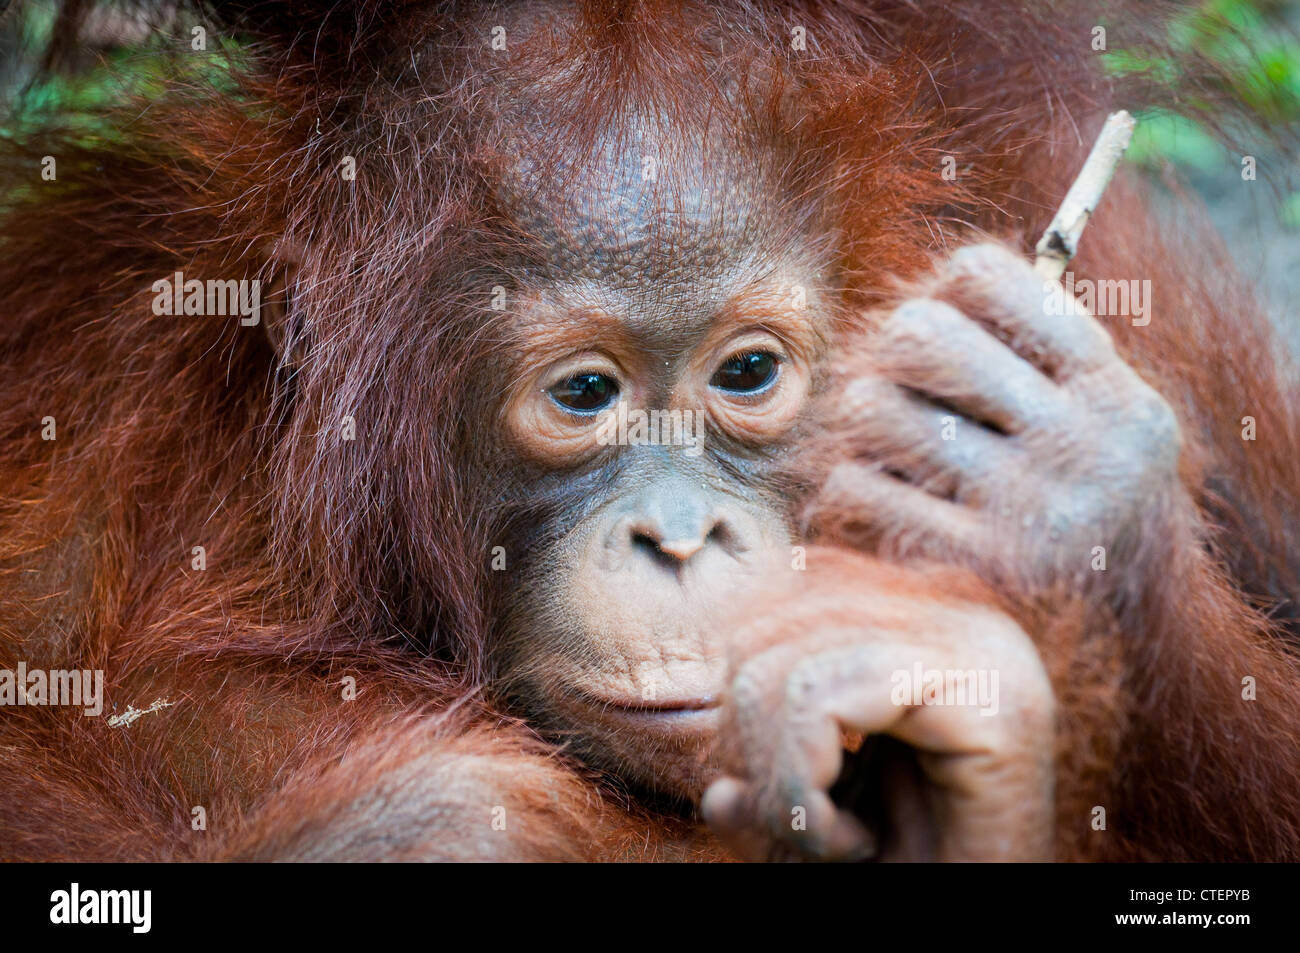 Eine wilde, habituierten Säugling Orang-Utan Orang Utan Orang Utan prüft neugierig einen Stick-Zweig, möglicherweise lernen, es als ein Werkzeug zu benutzen Stockfoto